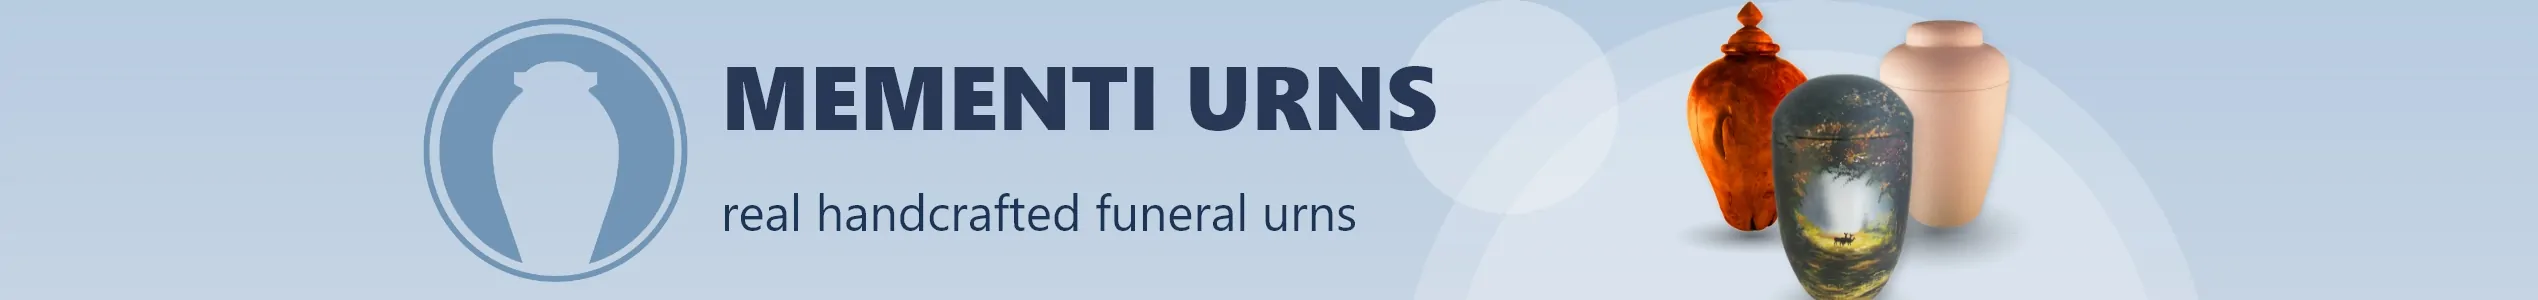 Mementi-Urnen-Banner